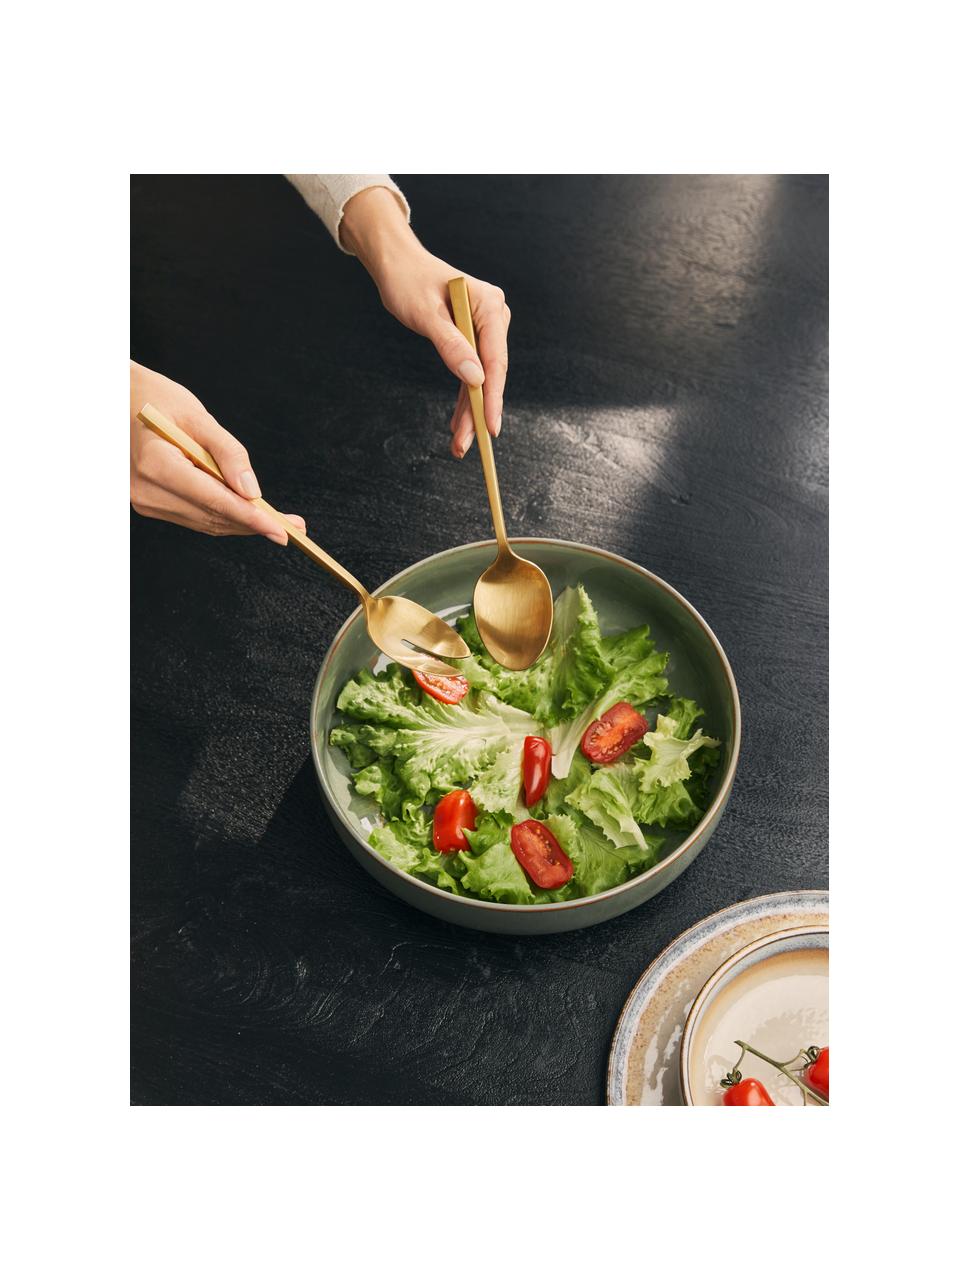 Goudkleurige saladebestekken Shine van roestvrijstaal, set van 2, Edelstaal 18/10

Het bestek is gemaakt van roestvrijstaal. Het is daardoor duurzaam, roest niet en is bestand tegen bacteriën., Goudkleurig, geborsteld, L 24 cm